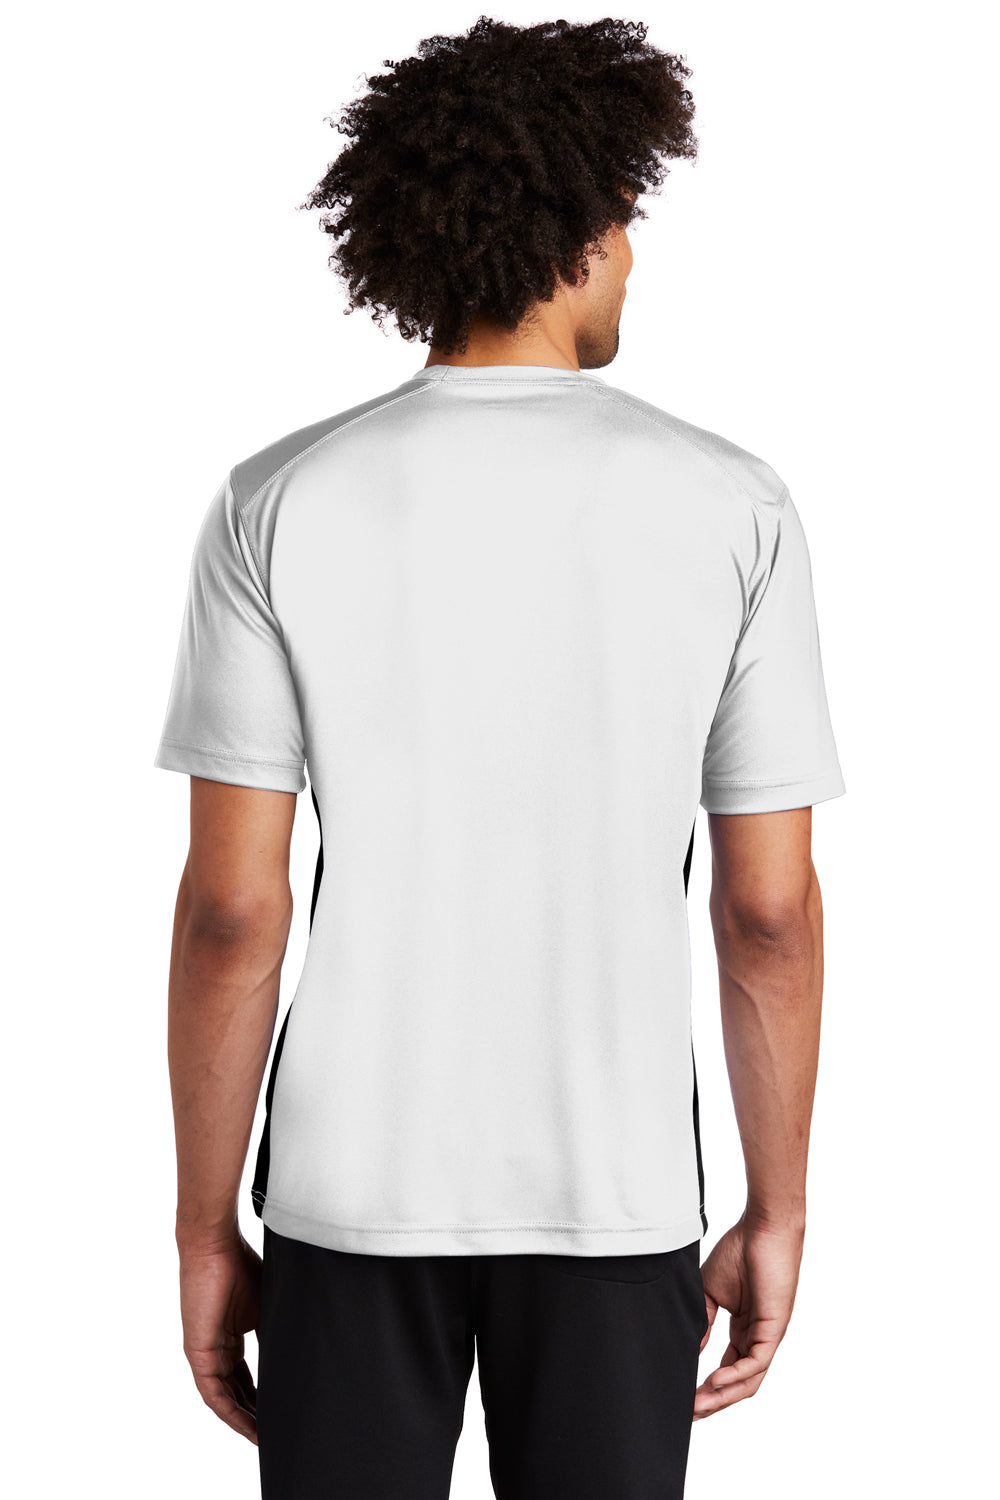 Sport-Tek T478 Mens Dry Zone Moisture Wicking Short Sleeve Crewneck T-Shirt White Back